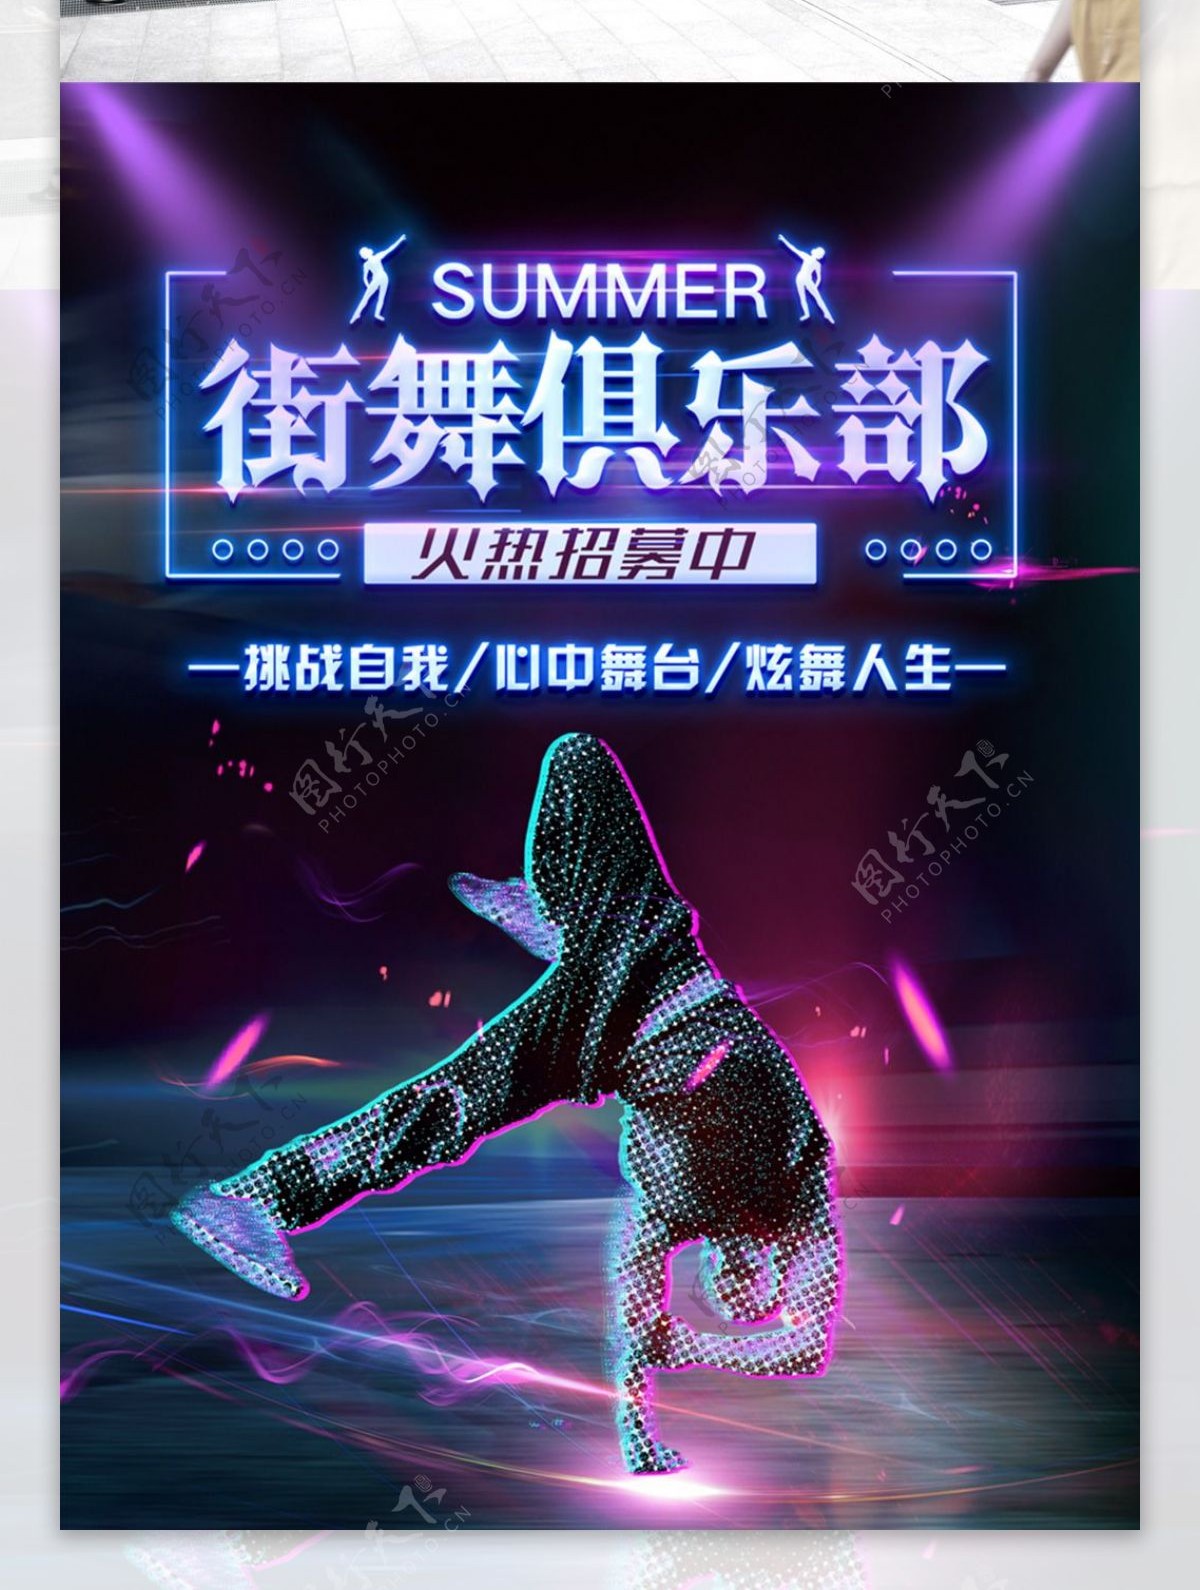 创意动感酷炫街舞俱乐部招募海报